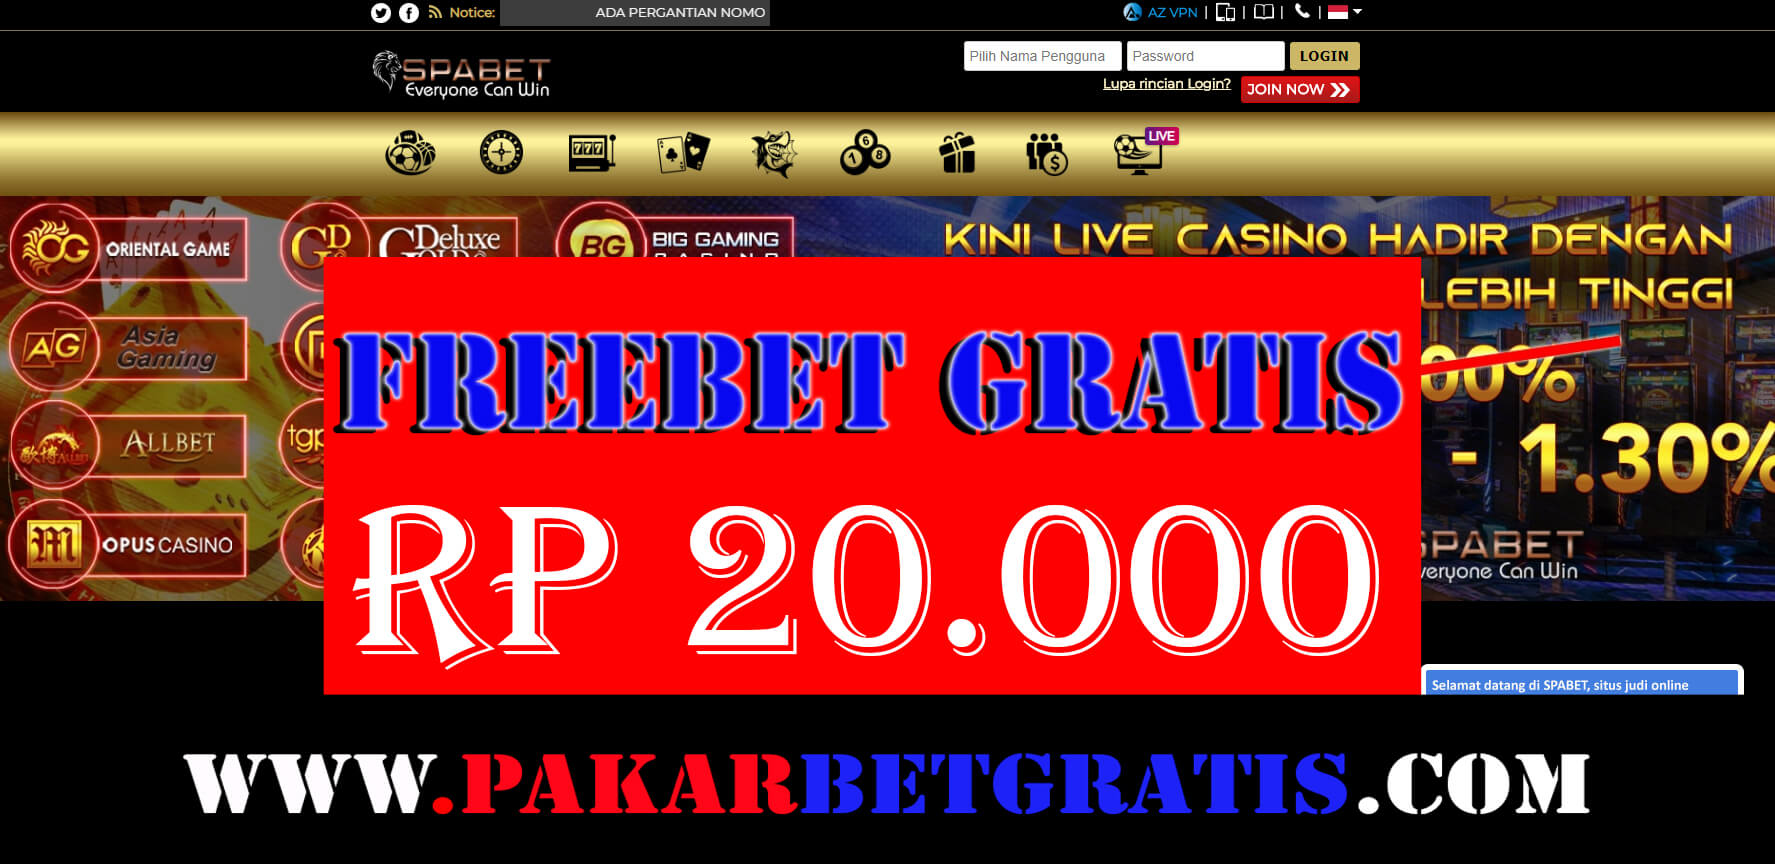 Freebet Gratis Spabet Rp 20.000 tanpa deposit